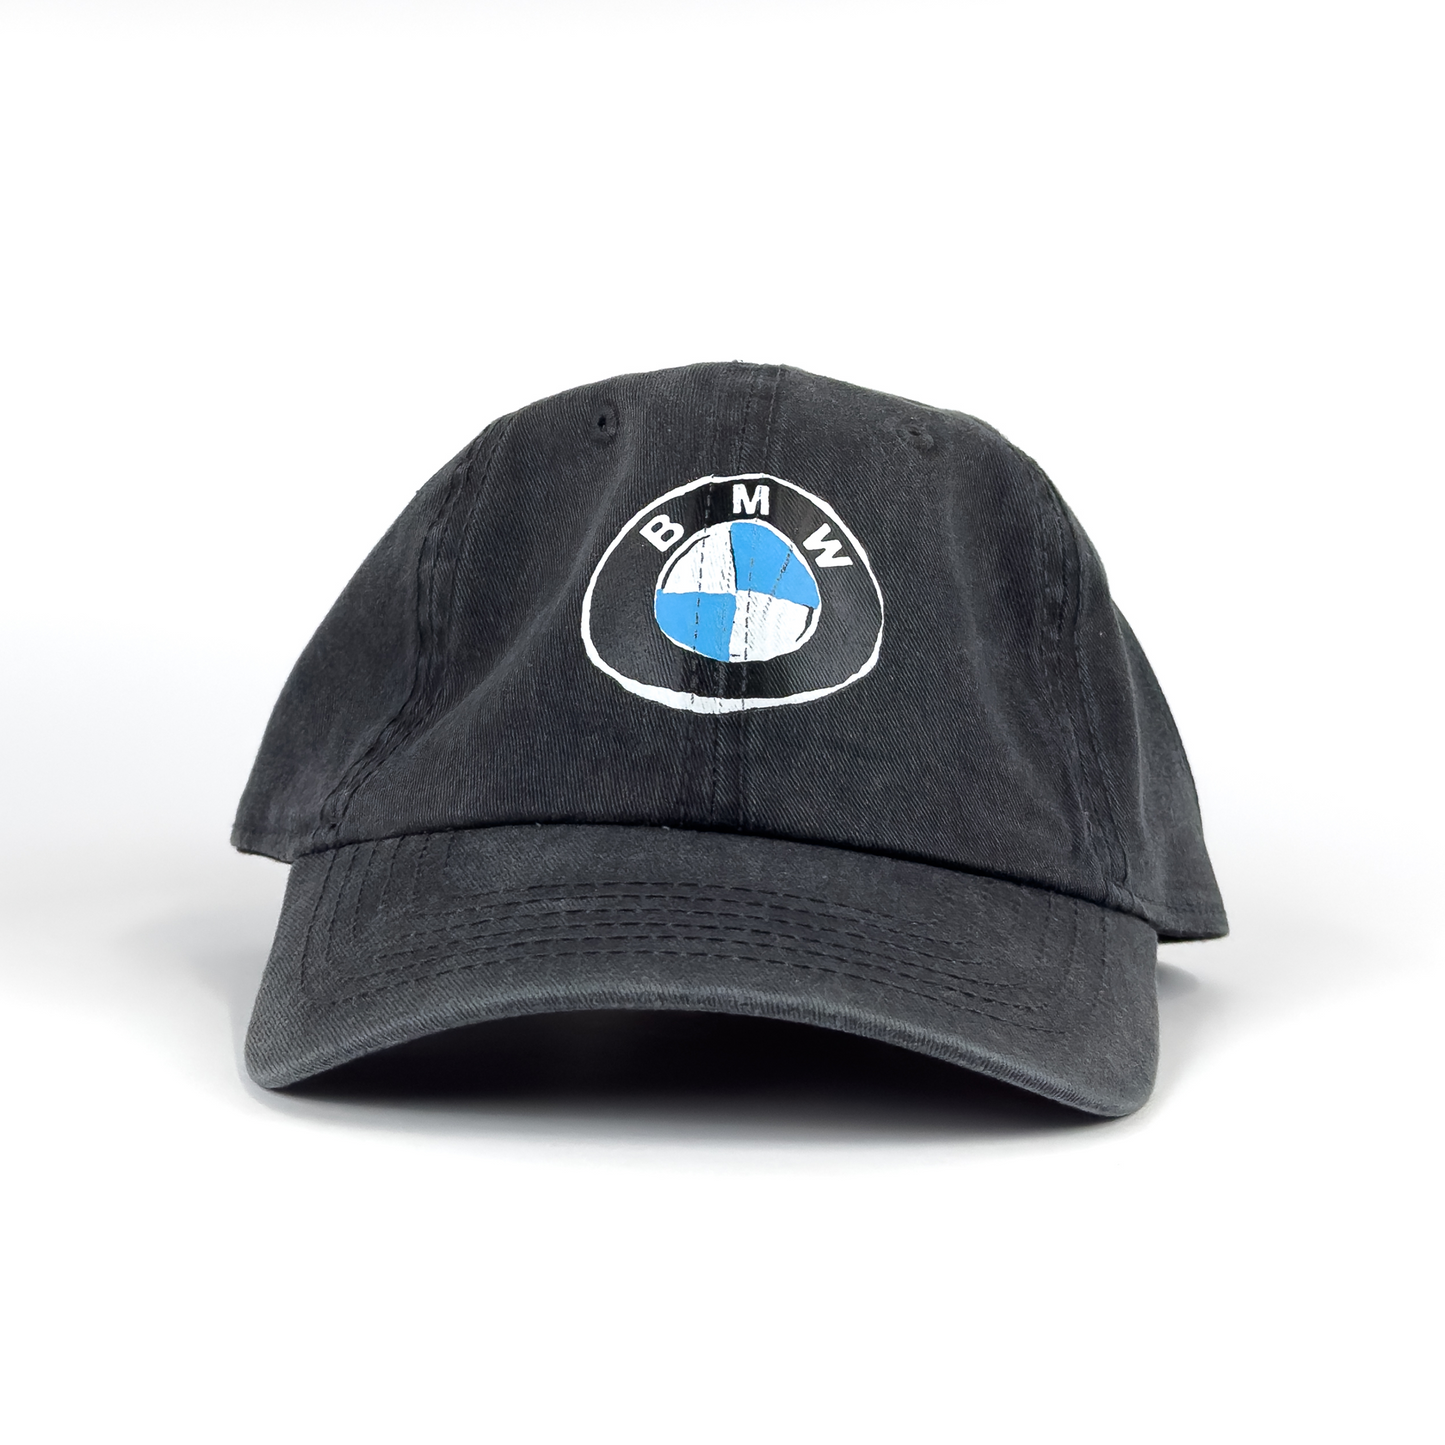 BMW DAD HAT - FADED BLACK